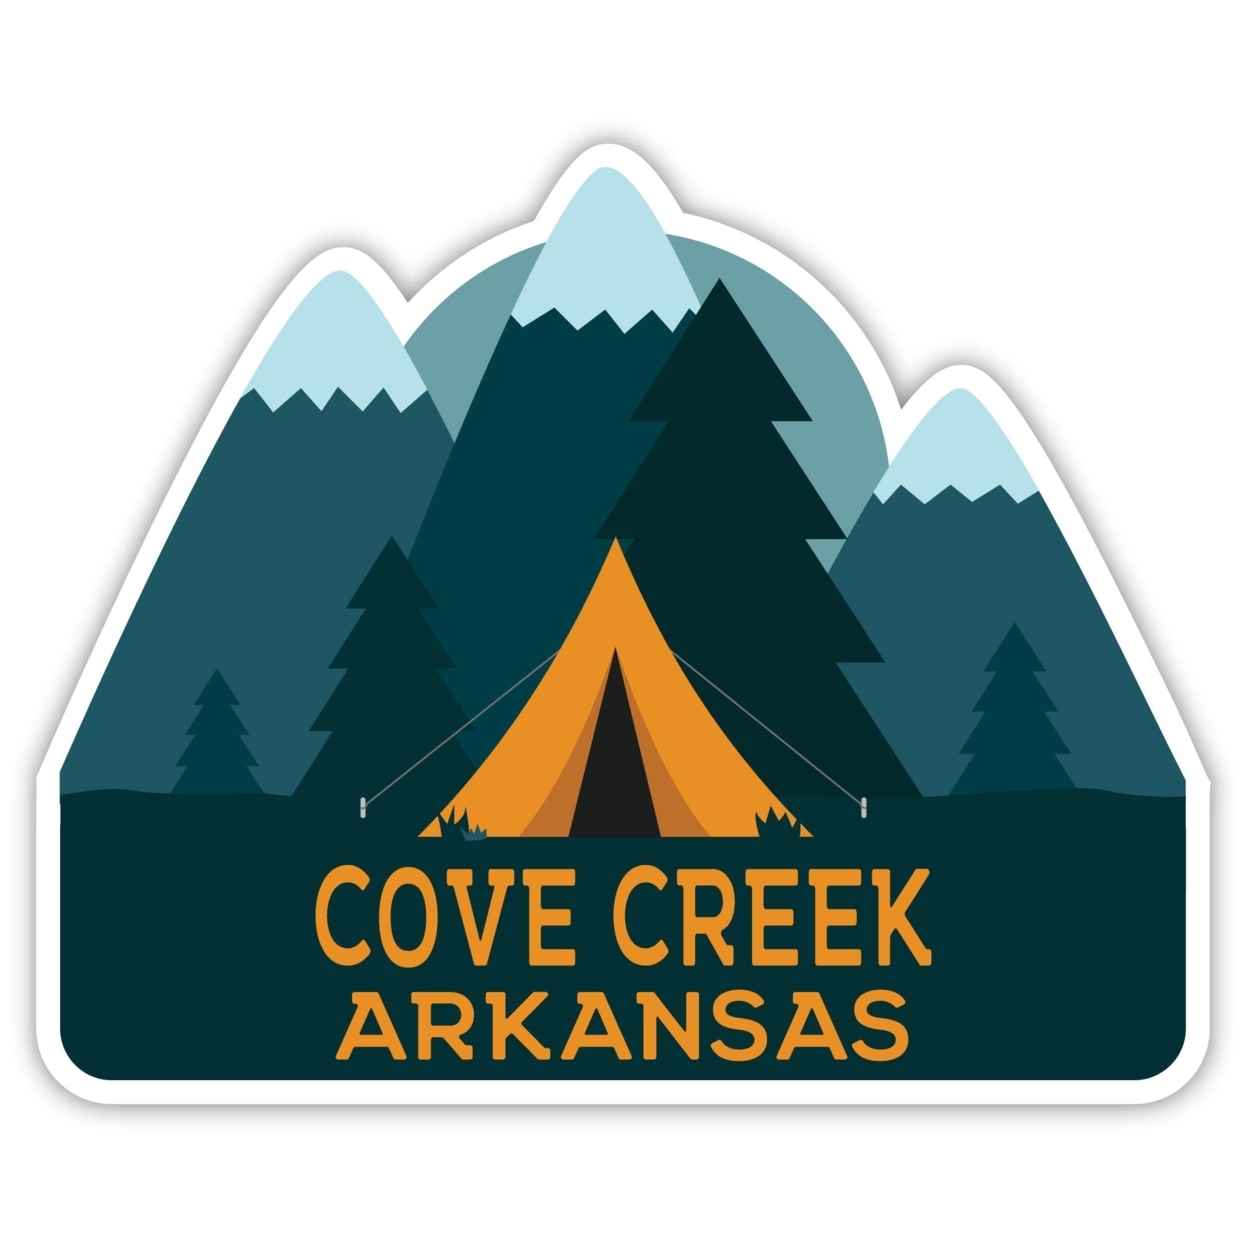 Cove Creek Arkansas Souvenir Decorative Stickers (Choose Theme And Size) - Single Unit, 4-Inch, Tent